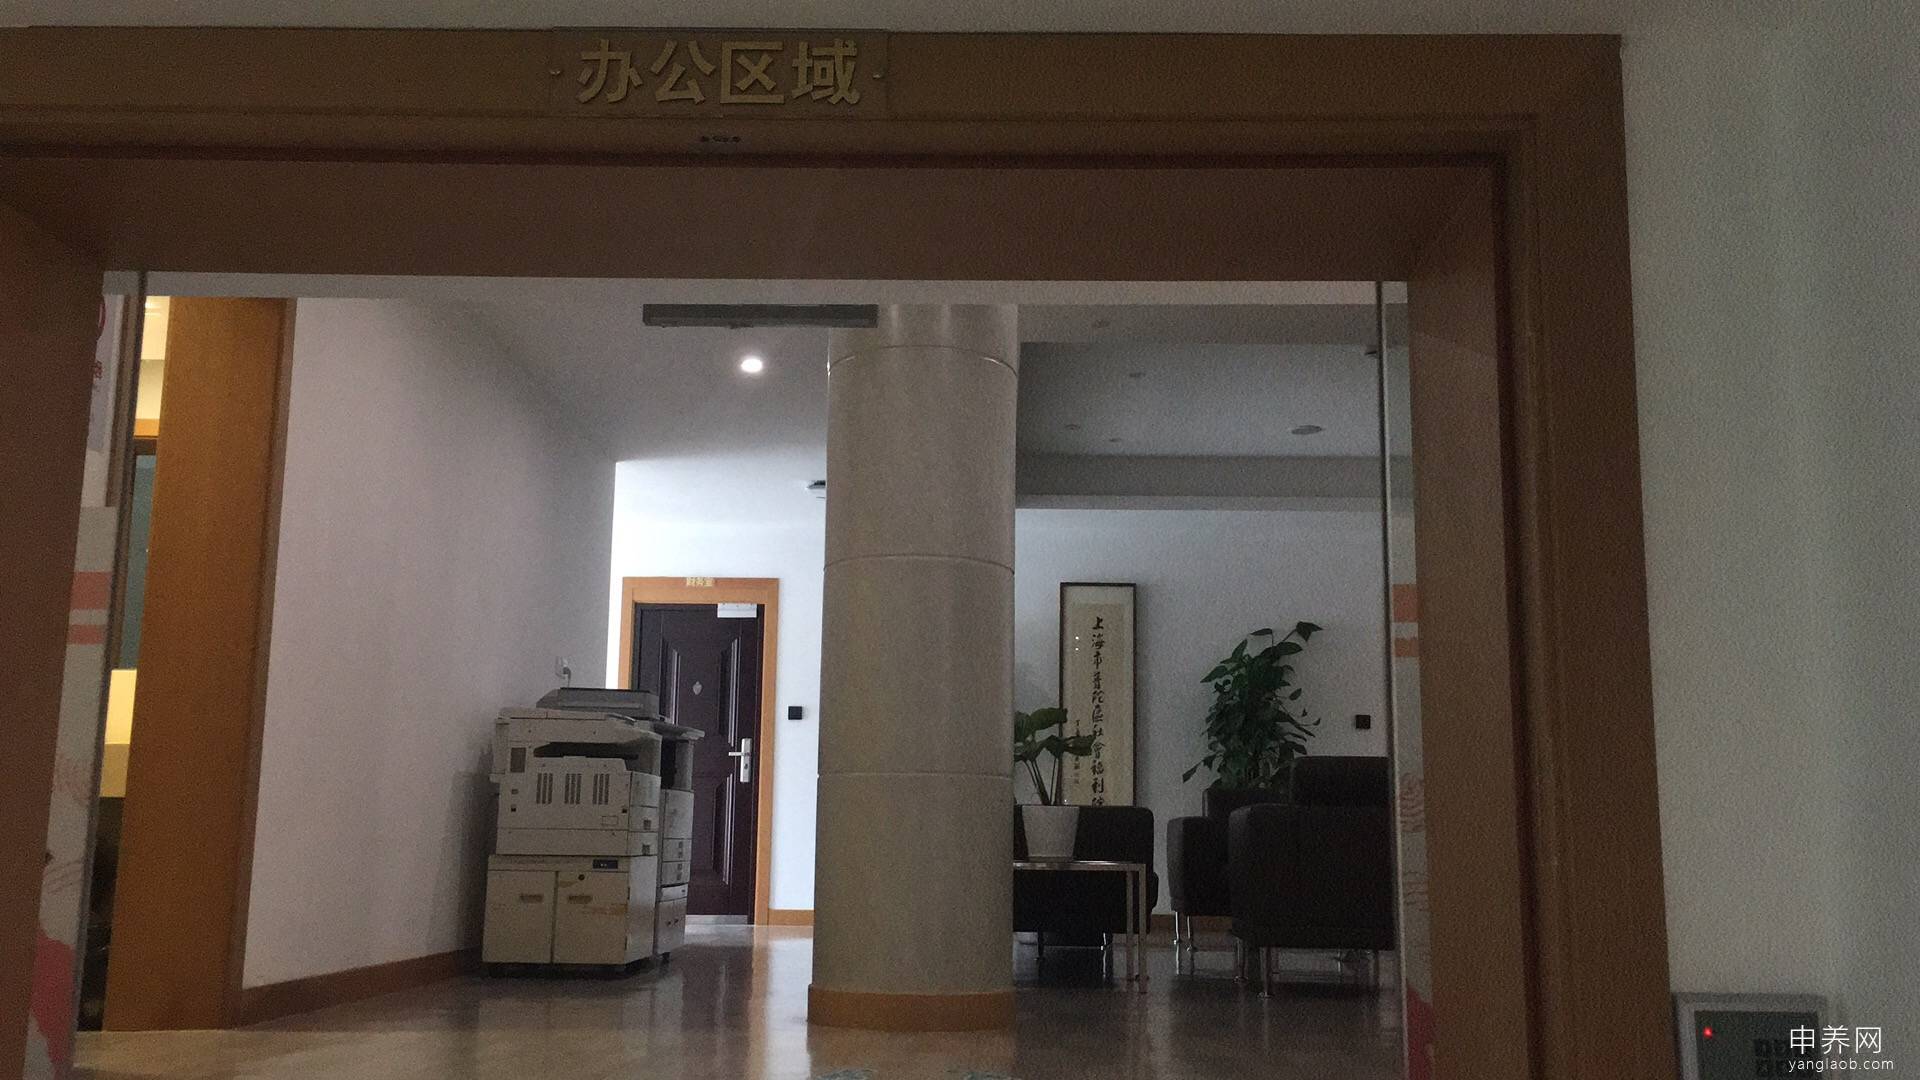 上海市社会福利院环境3